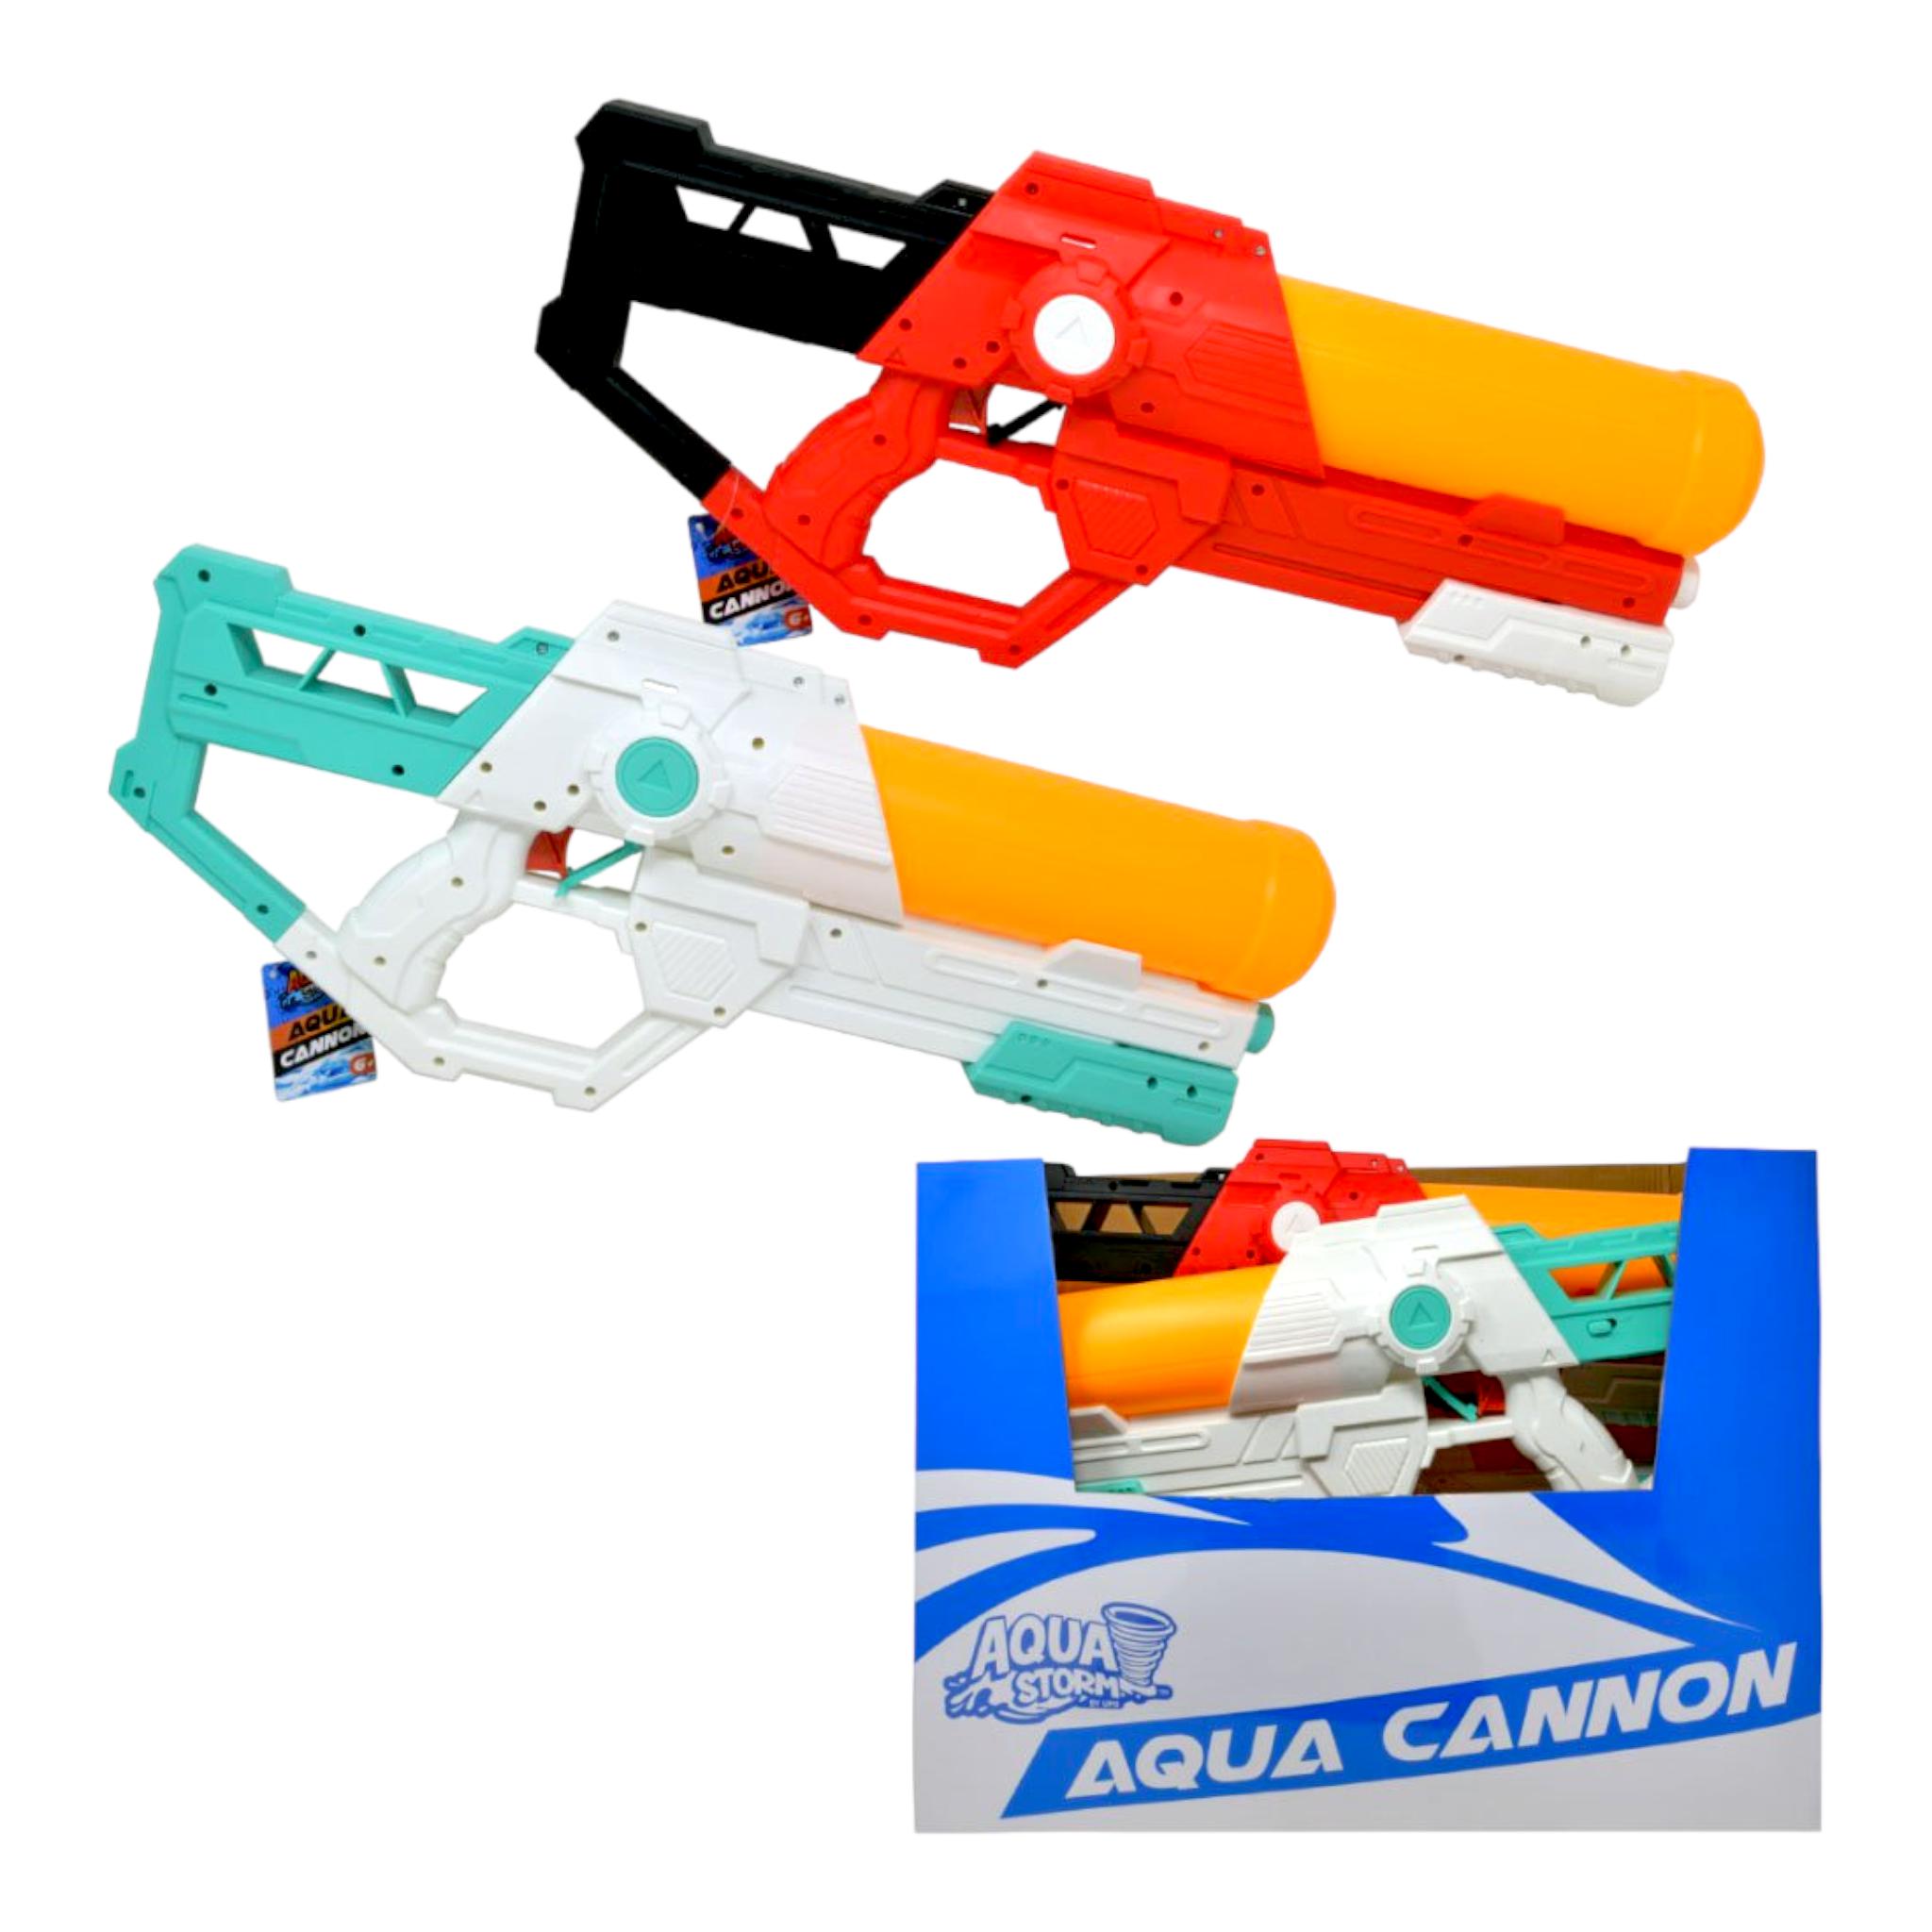 Aqua Storm 20" Big Aqua Cannon Water Gun Blaster